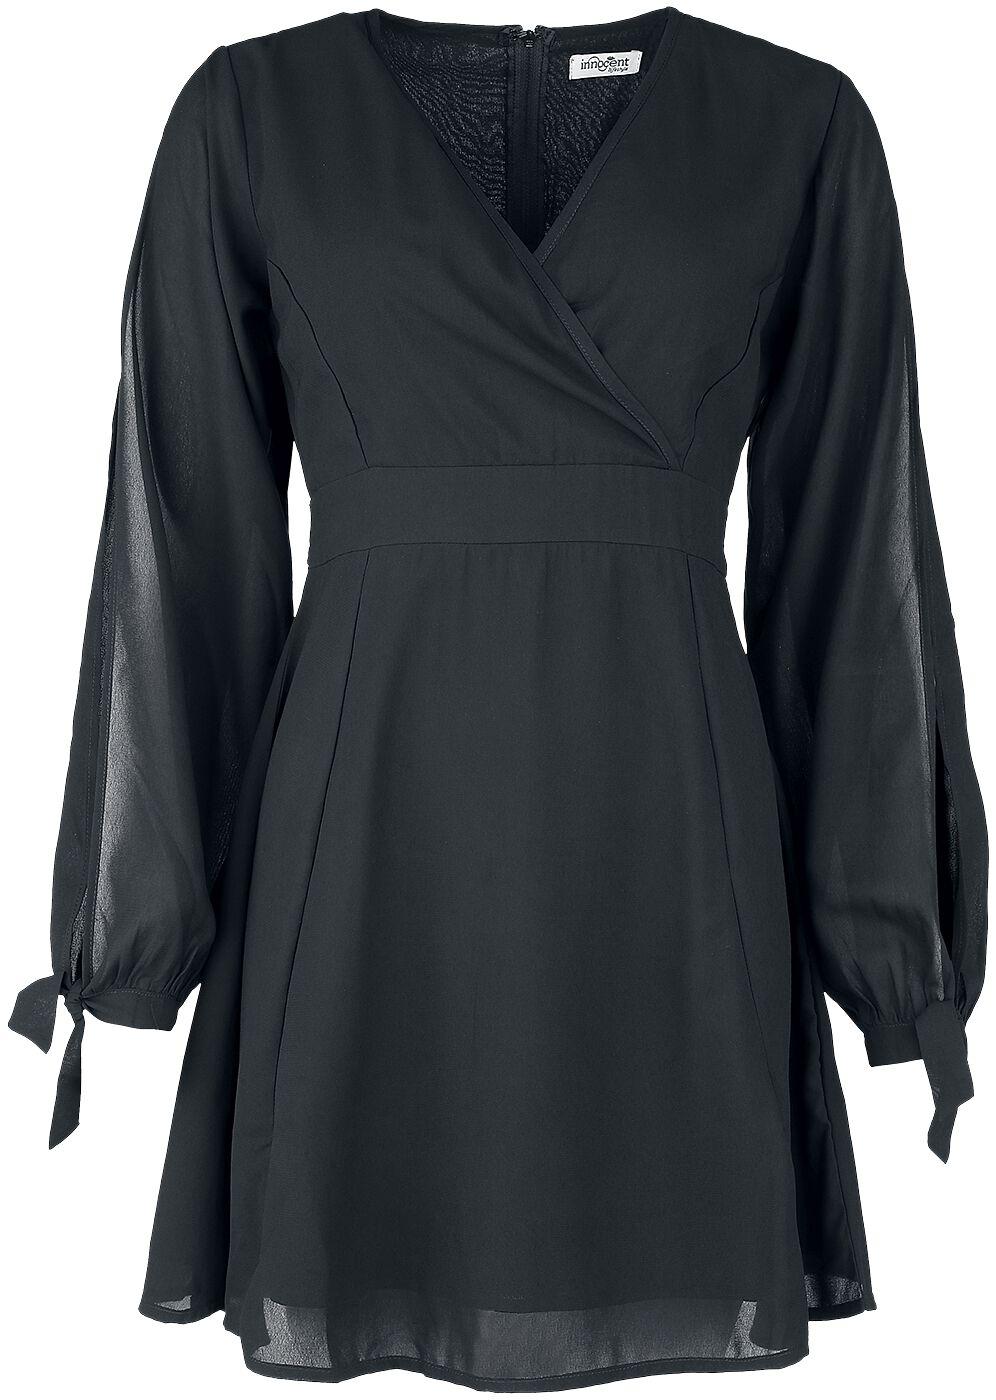 Innocent - Gothic Kurzes Kleid - Opal Dress - XS bis 4XL - für Damen - Größe XXL - schwarz